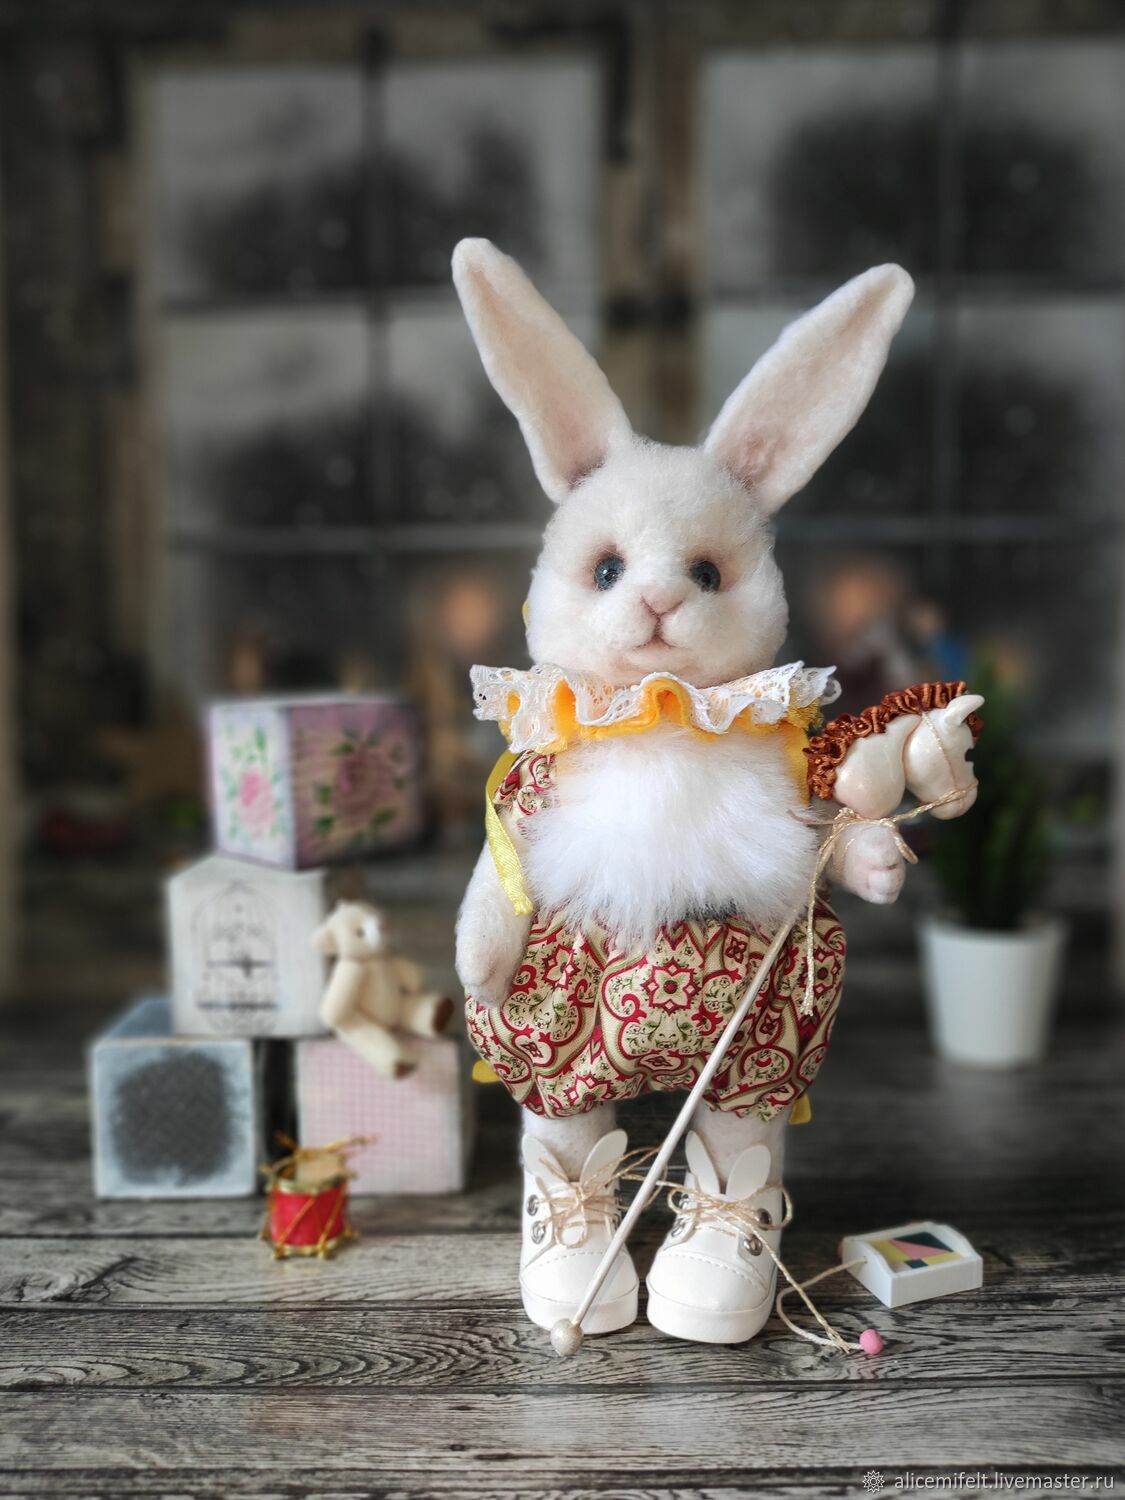 Белый Кролик Войлочная игрушка из шерсти:Иоанн, Войлочная игрушка, Калининград,  Фото №1